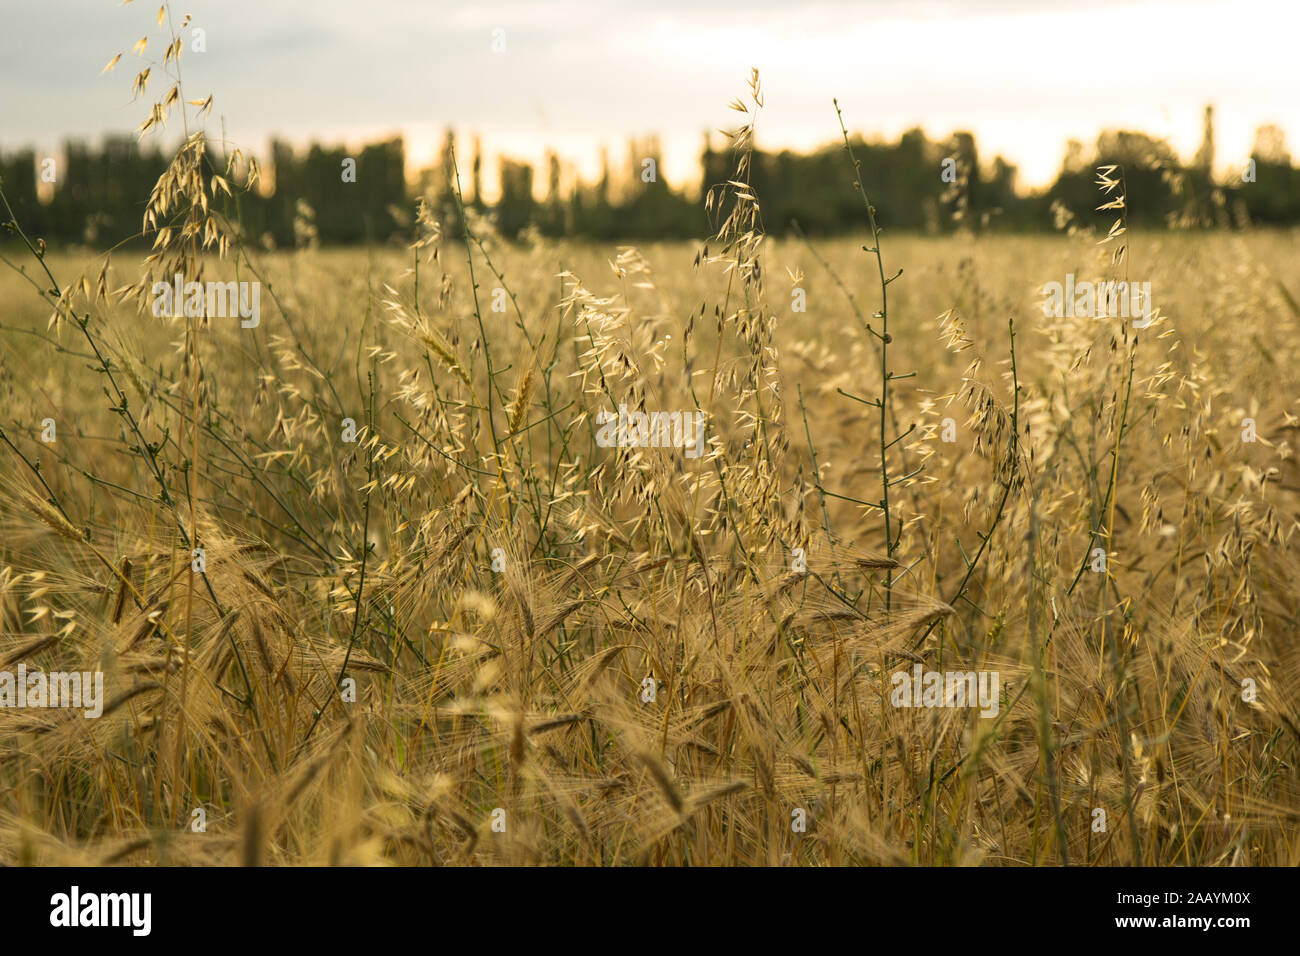 Épis de blé dans un champ de blé.Récolte de blé au coucher du soleil. Banque D'Images